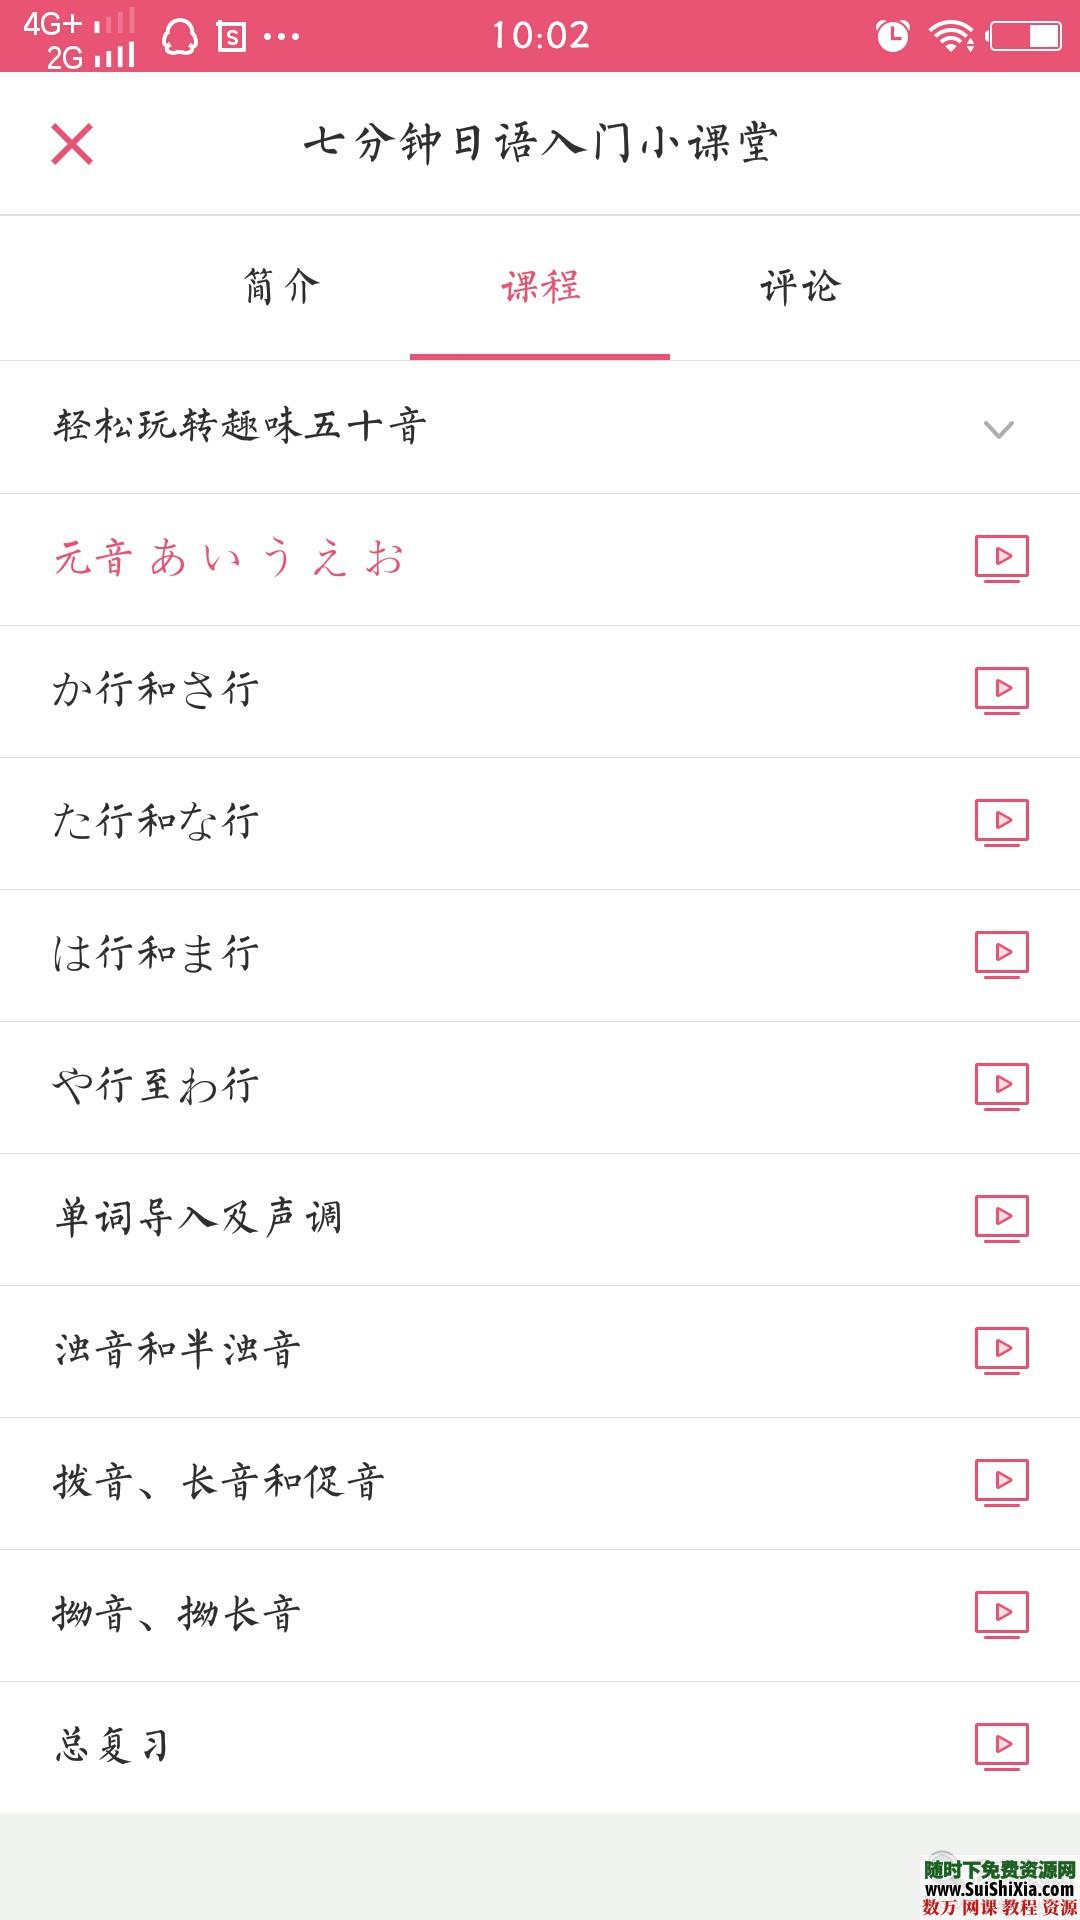 日语50音秒会 绝对专业 神器app 这是什么神仙app呀 升级打怪式学习 第3张